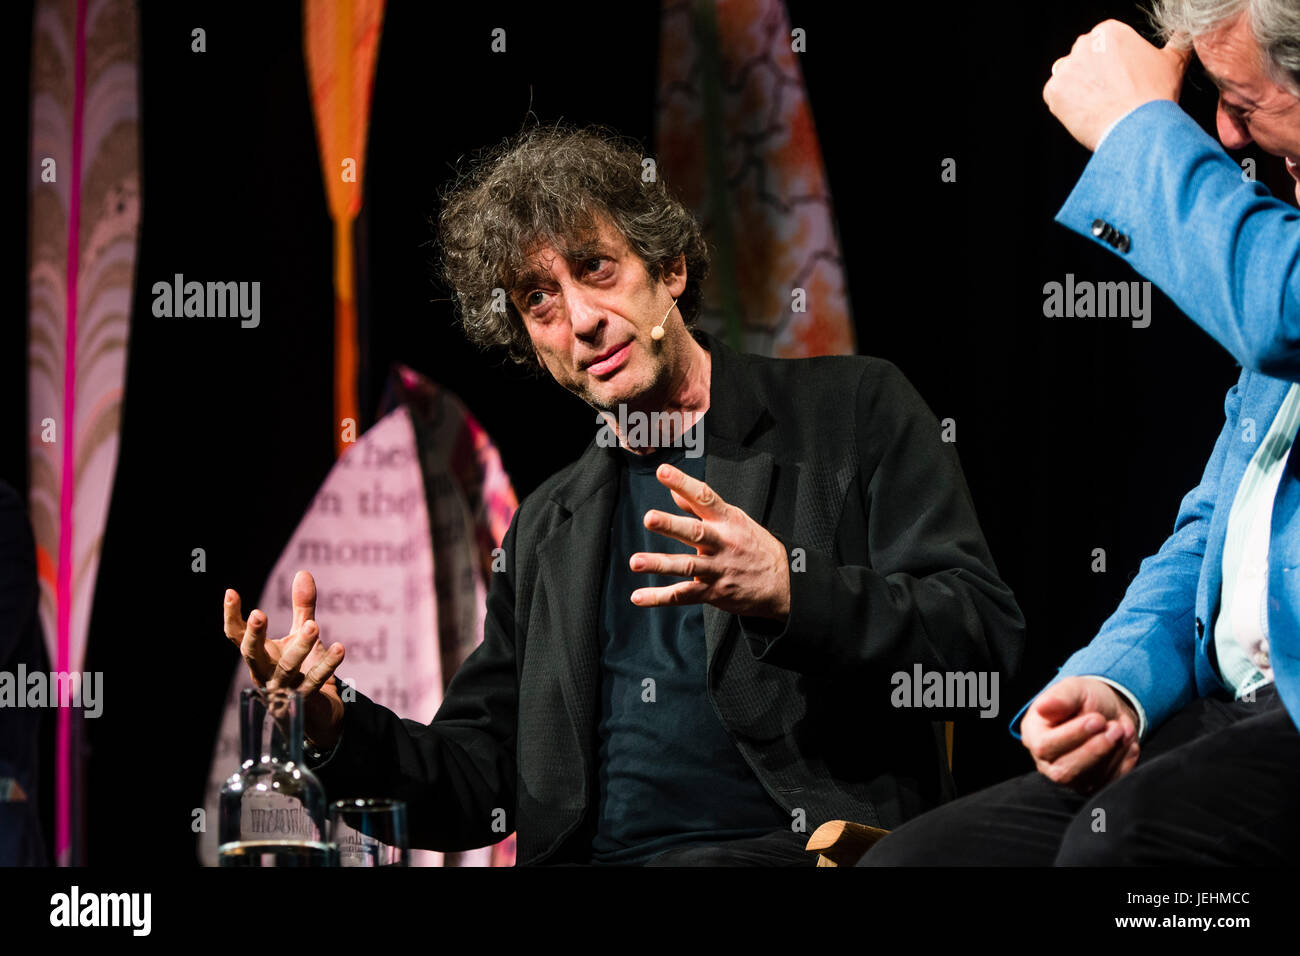 Neil Gaiman, autore della breve fiction, romanzi, fumetti, romanzi grafici, audio Theatre, e pellicole, in conversazione con Stephen Fry al 2017 Hay Festival della letteratura e delle arti, Hay on Wye, Wales UK Foto Stock